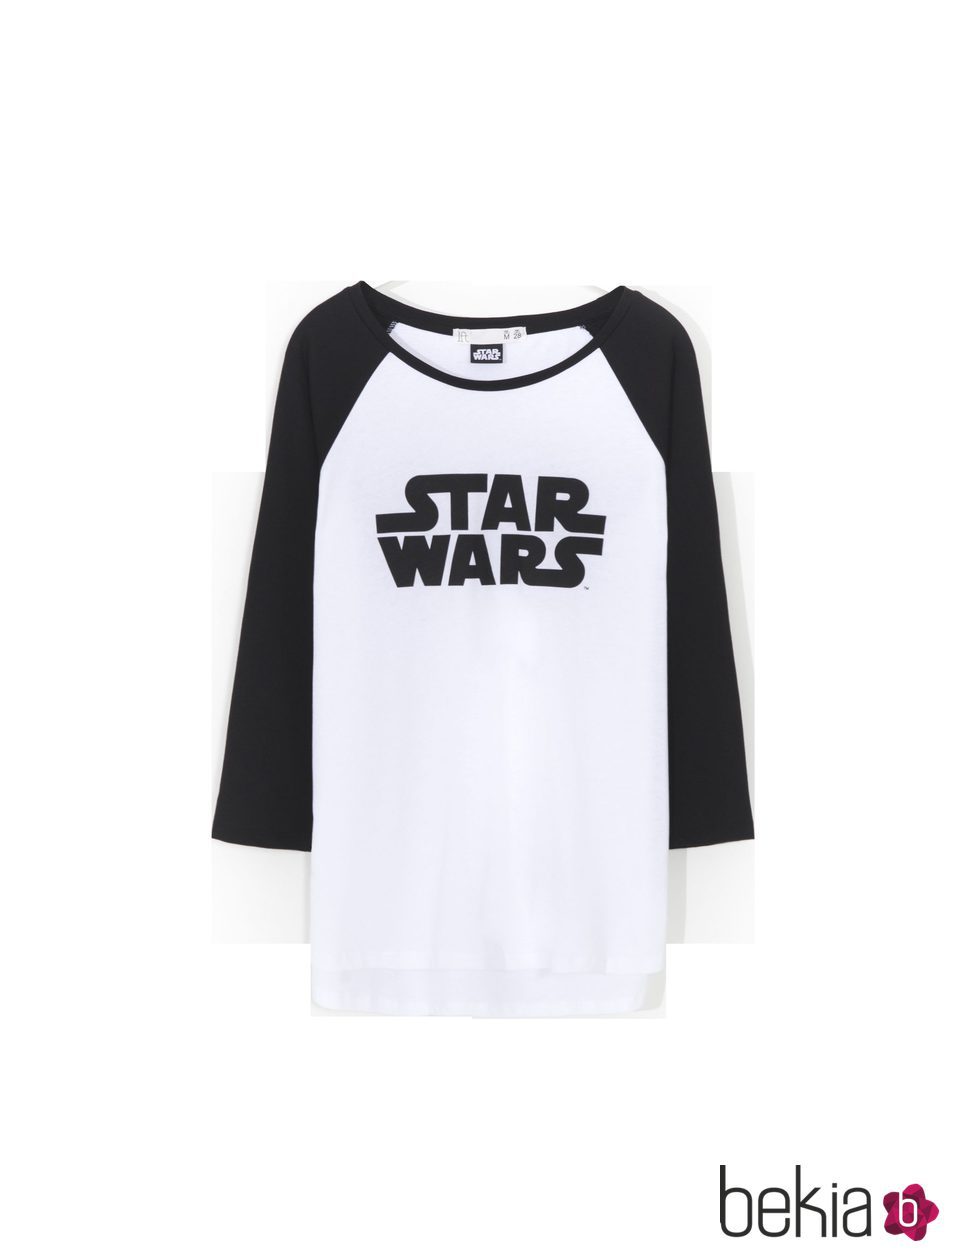 Camiseta blanca con logo y mangas negras de 'Star Wars' para Lefties